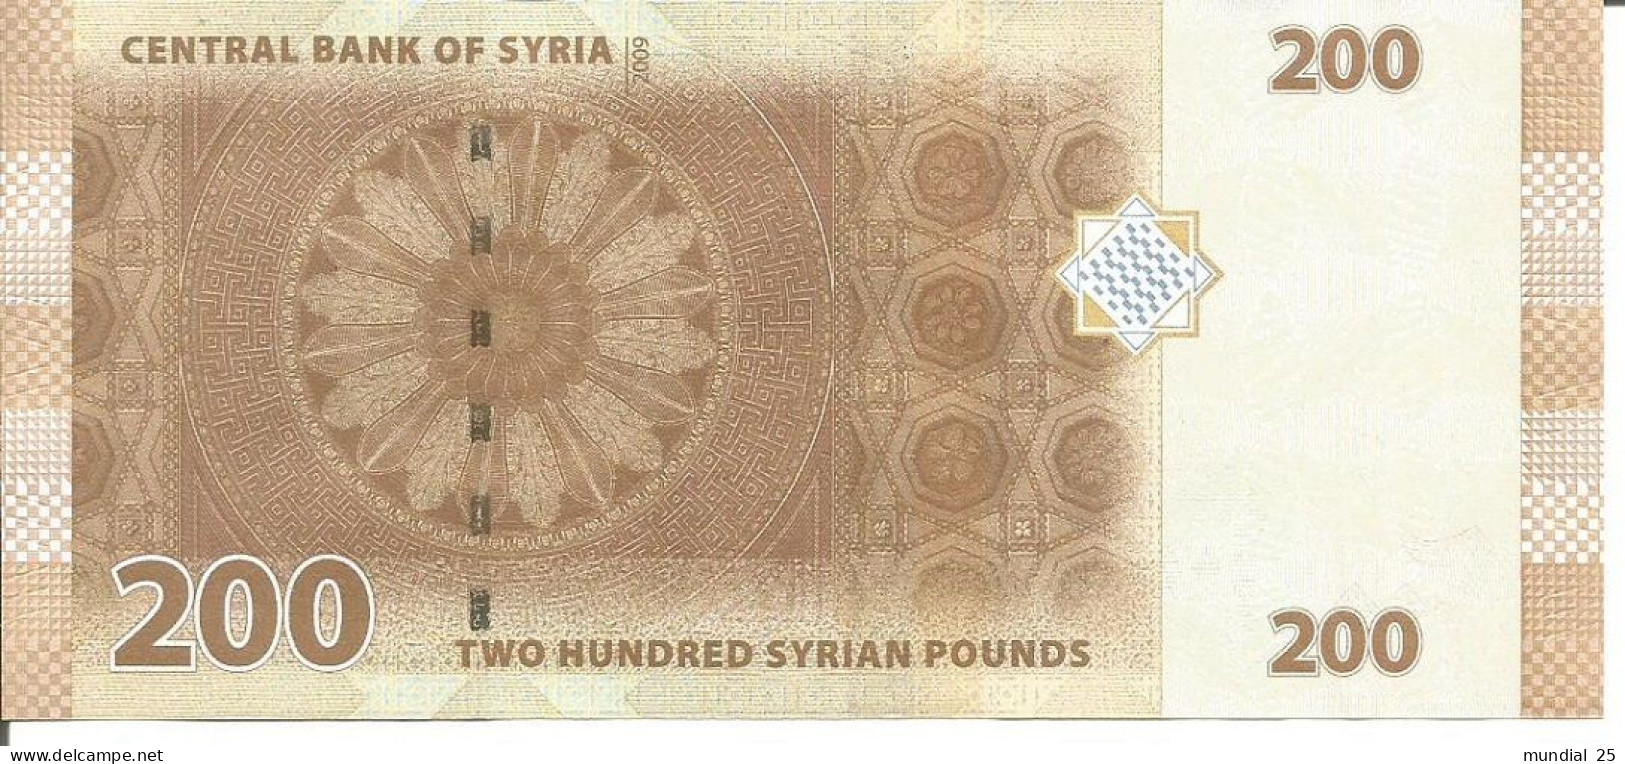 2 SYRIA NOTES 200 POUNDS 2009 - Syria